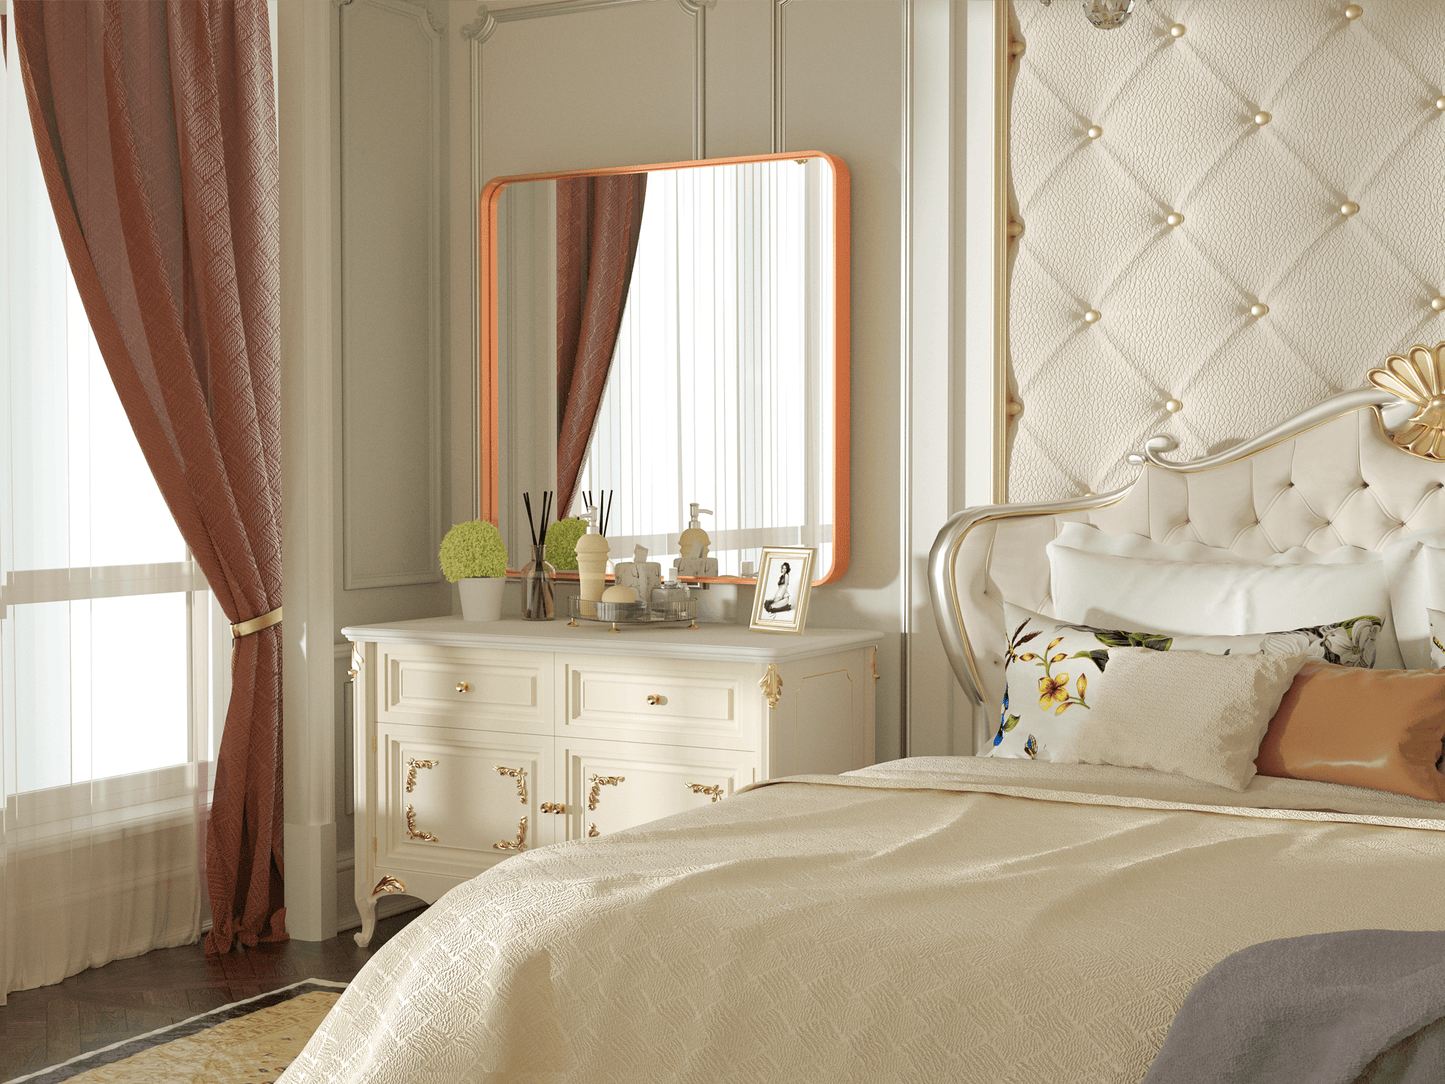 
                  
                    Miroir décoratif à cadre carré moderne PILOCOS de 36 po x 36 po pour vanité de chambre à coucher
                  
                